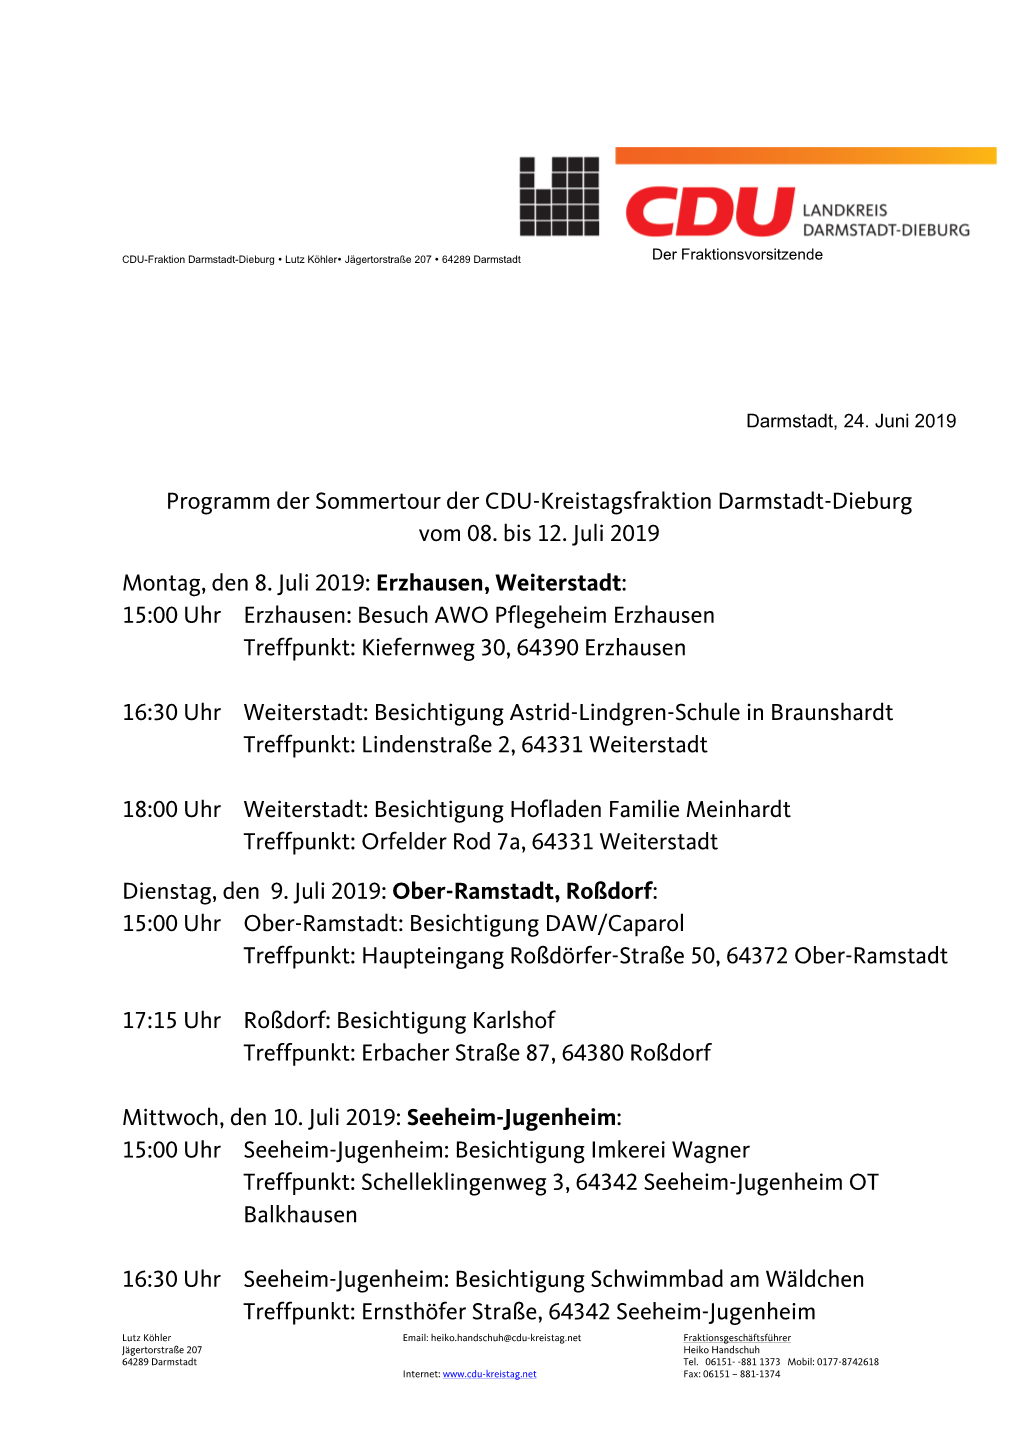 Programm Der Sommertour Der CDU-Kreistagsfraktion Darmstadt-Dieburg Vom 08